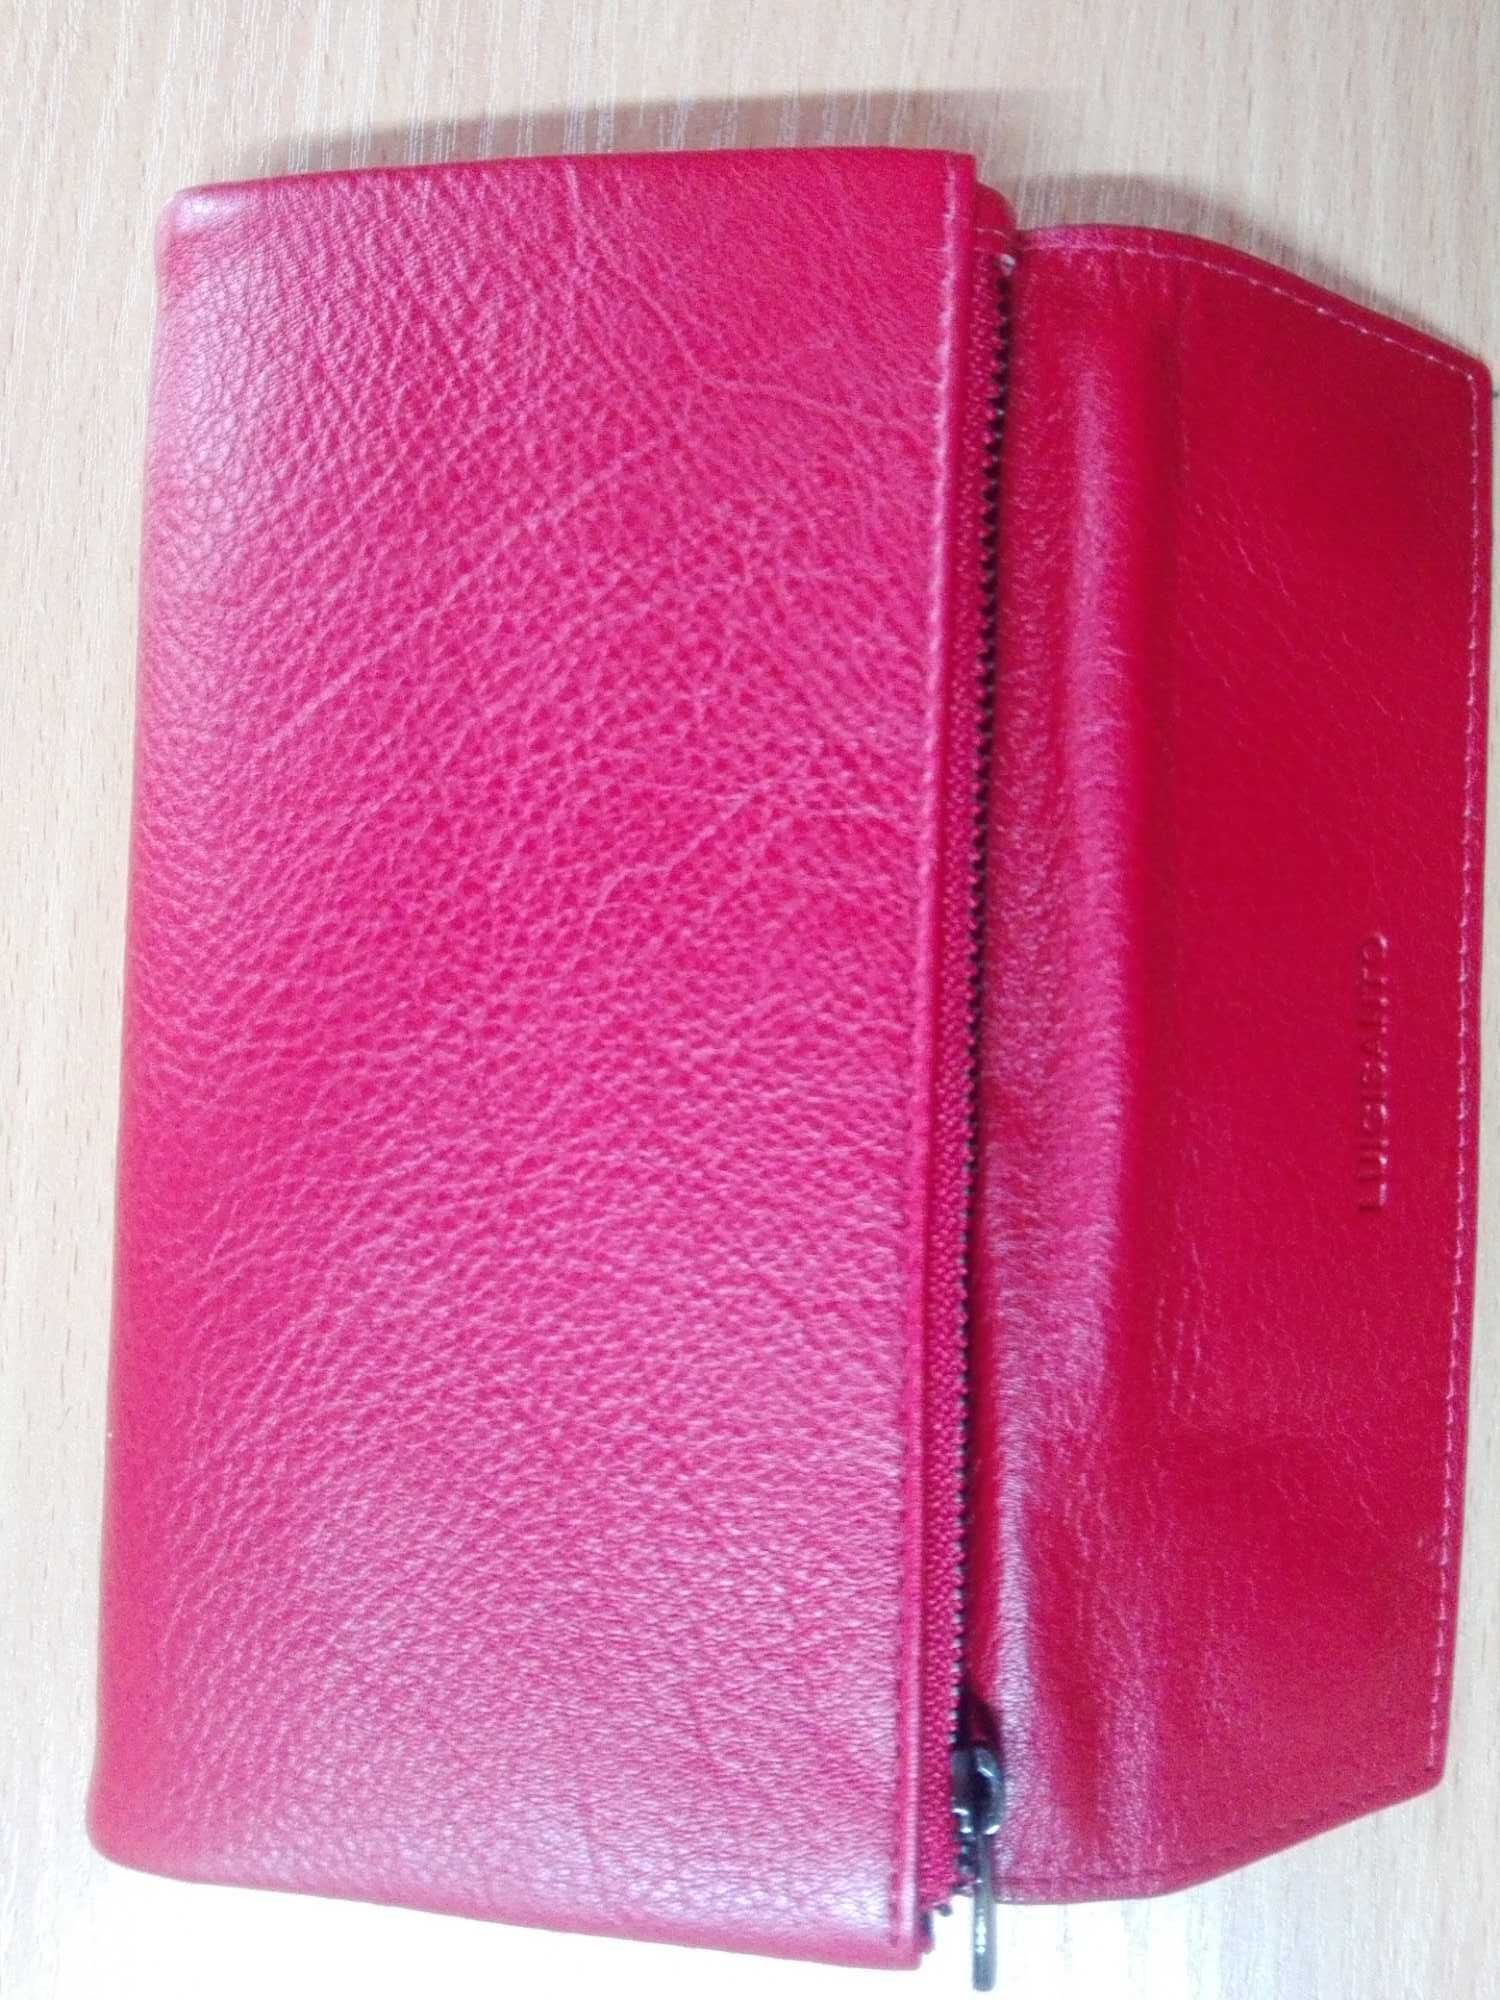 Жіночий шкіряний гаманець LUIGISANTO. Червоний.